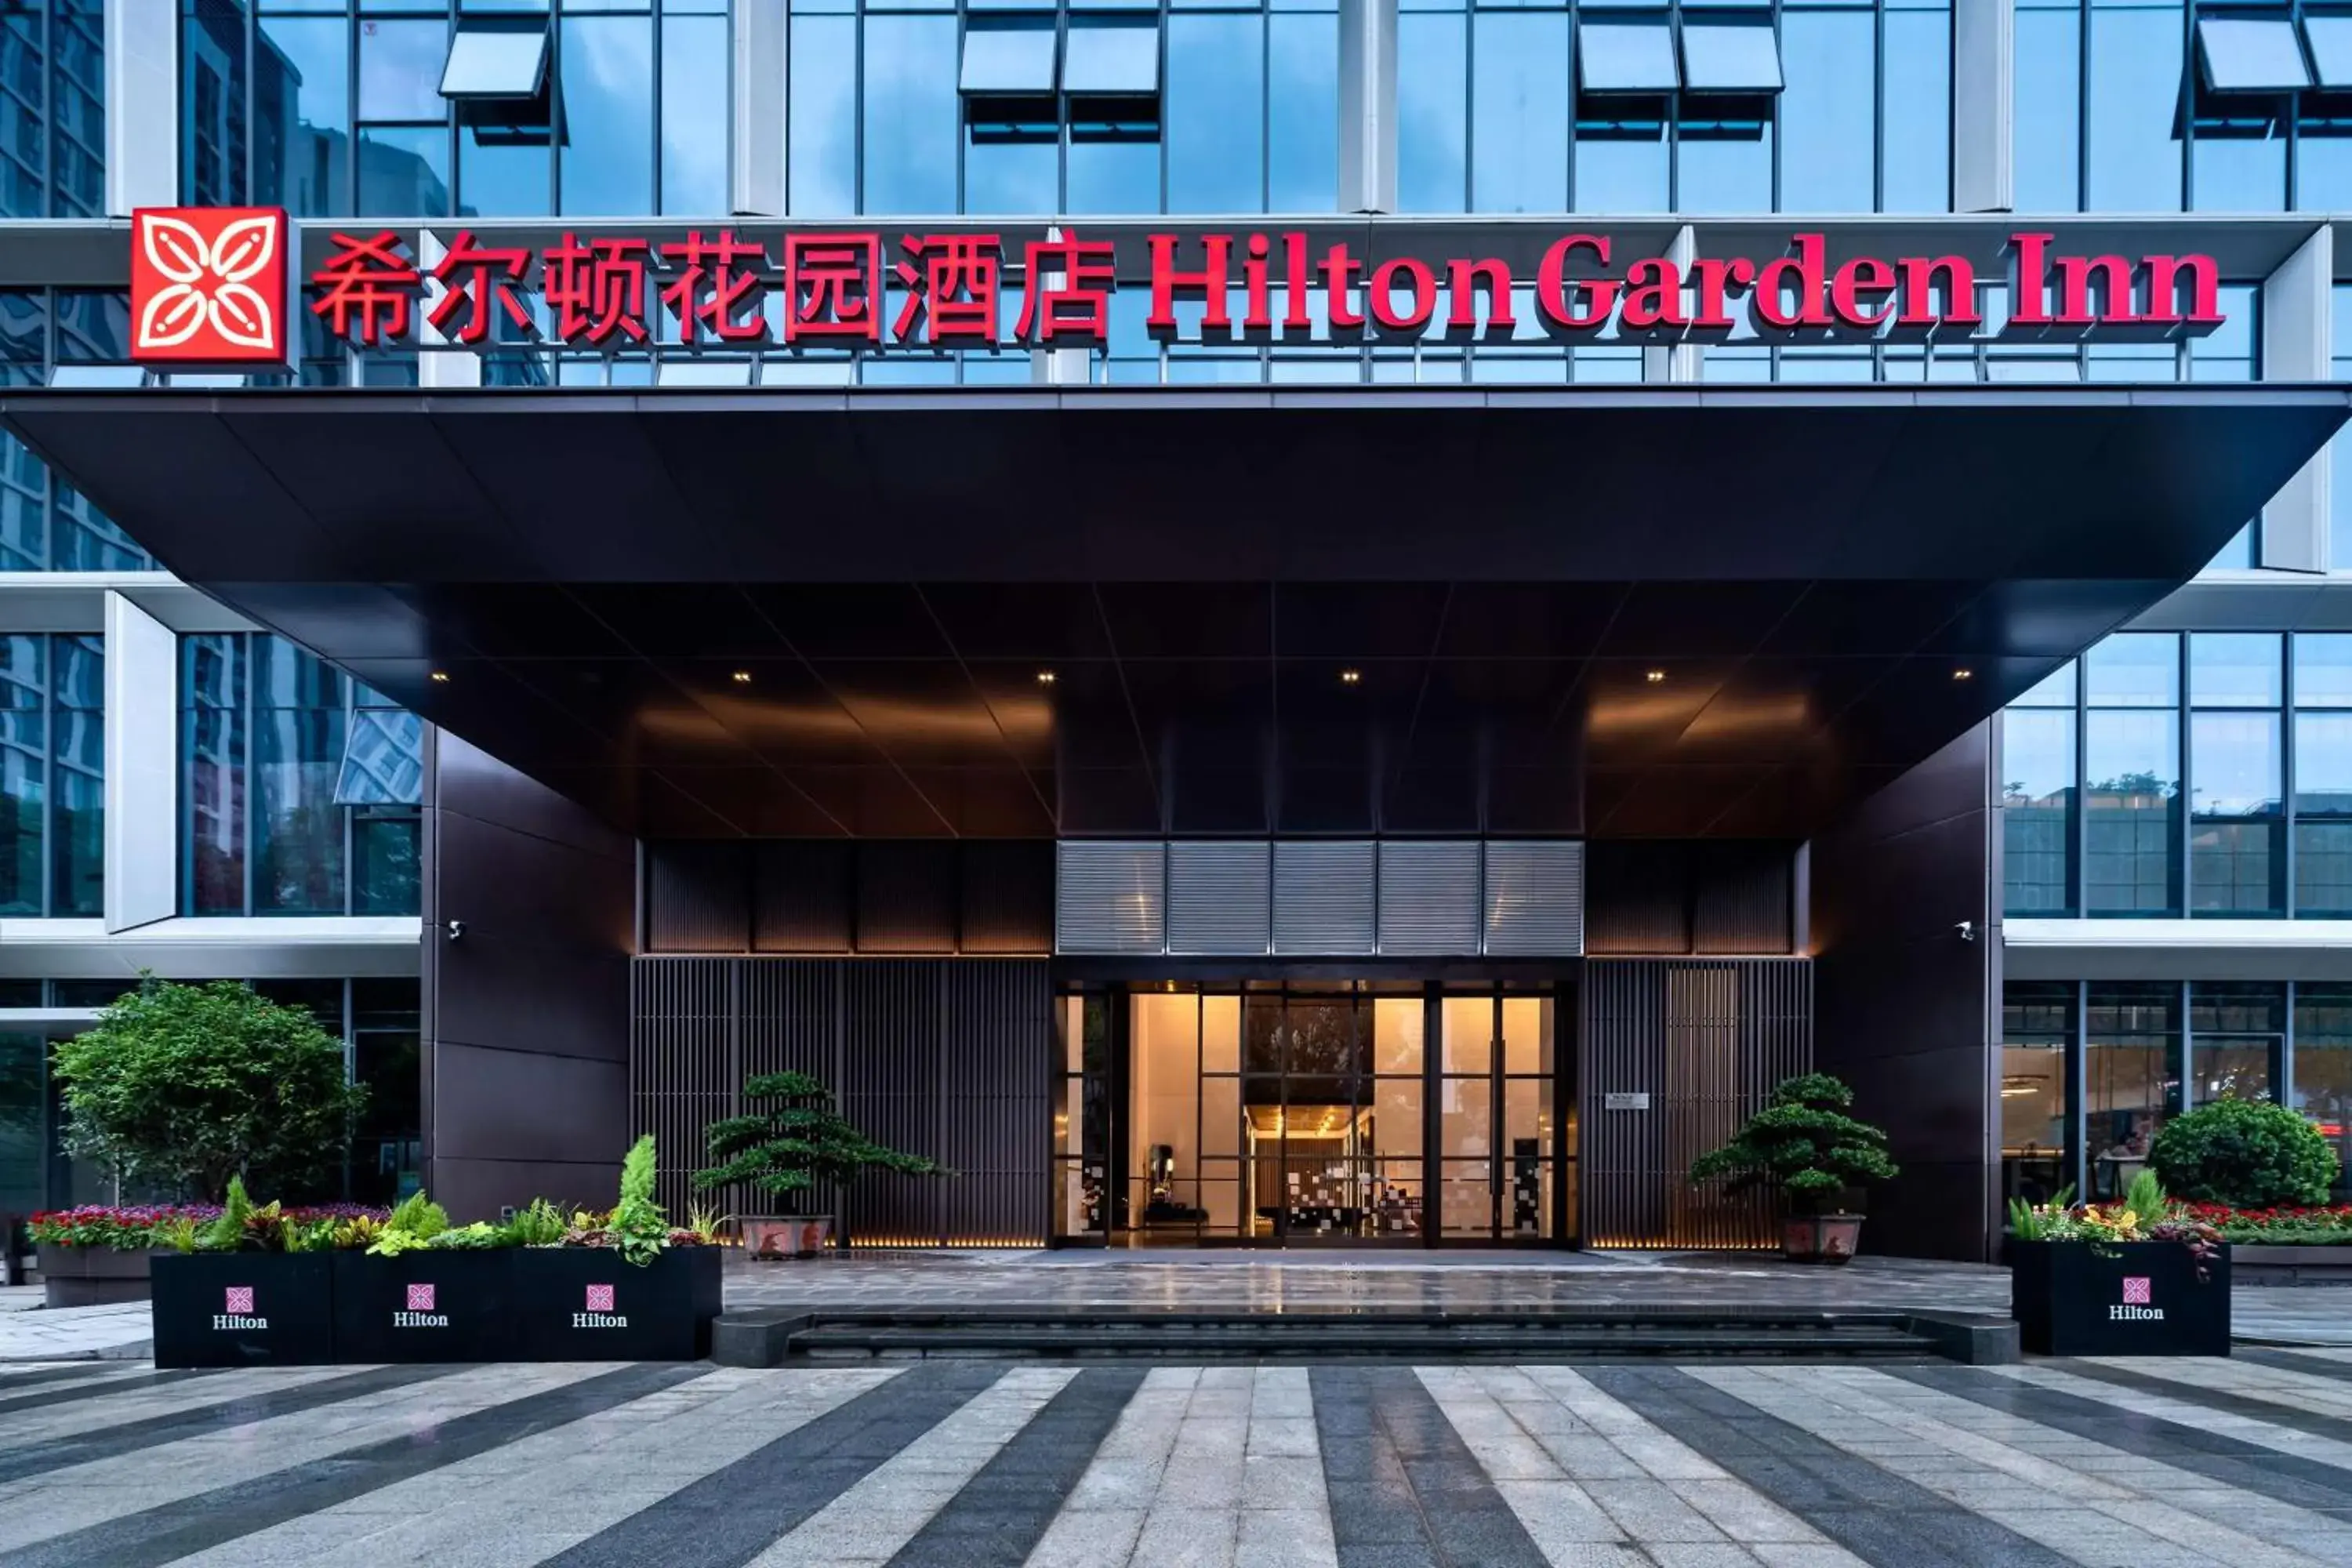 Property building, Facade/Entrance in Hilton Garden Inn Shenzhen Nanshan Science & Technology Park